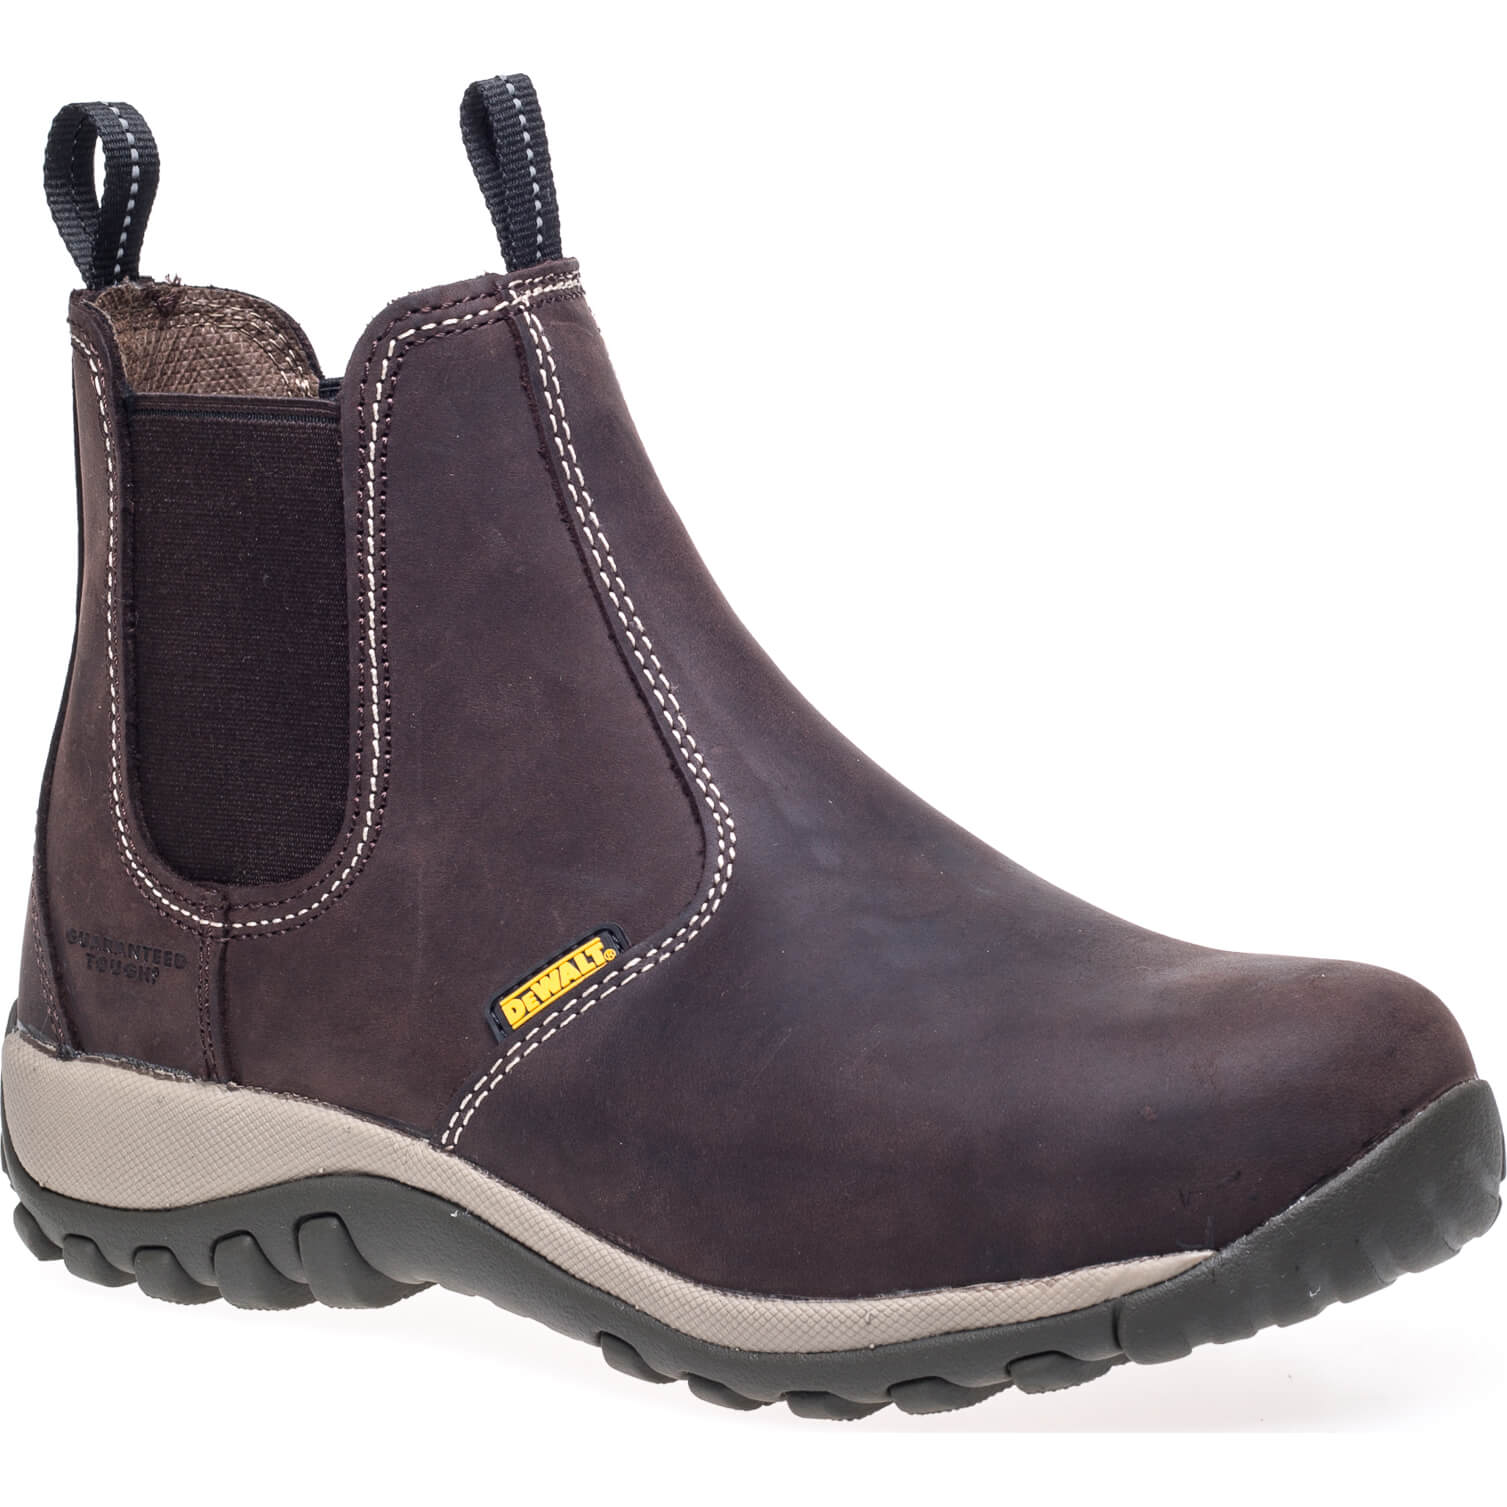 DeWalt Radial Mens Safety Dealer Boots Brown Size 9